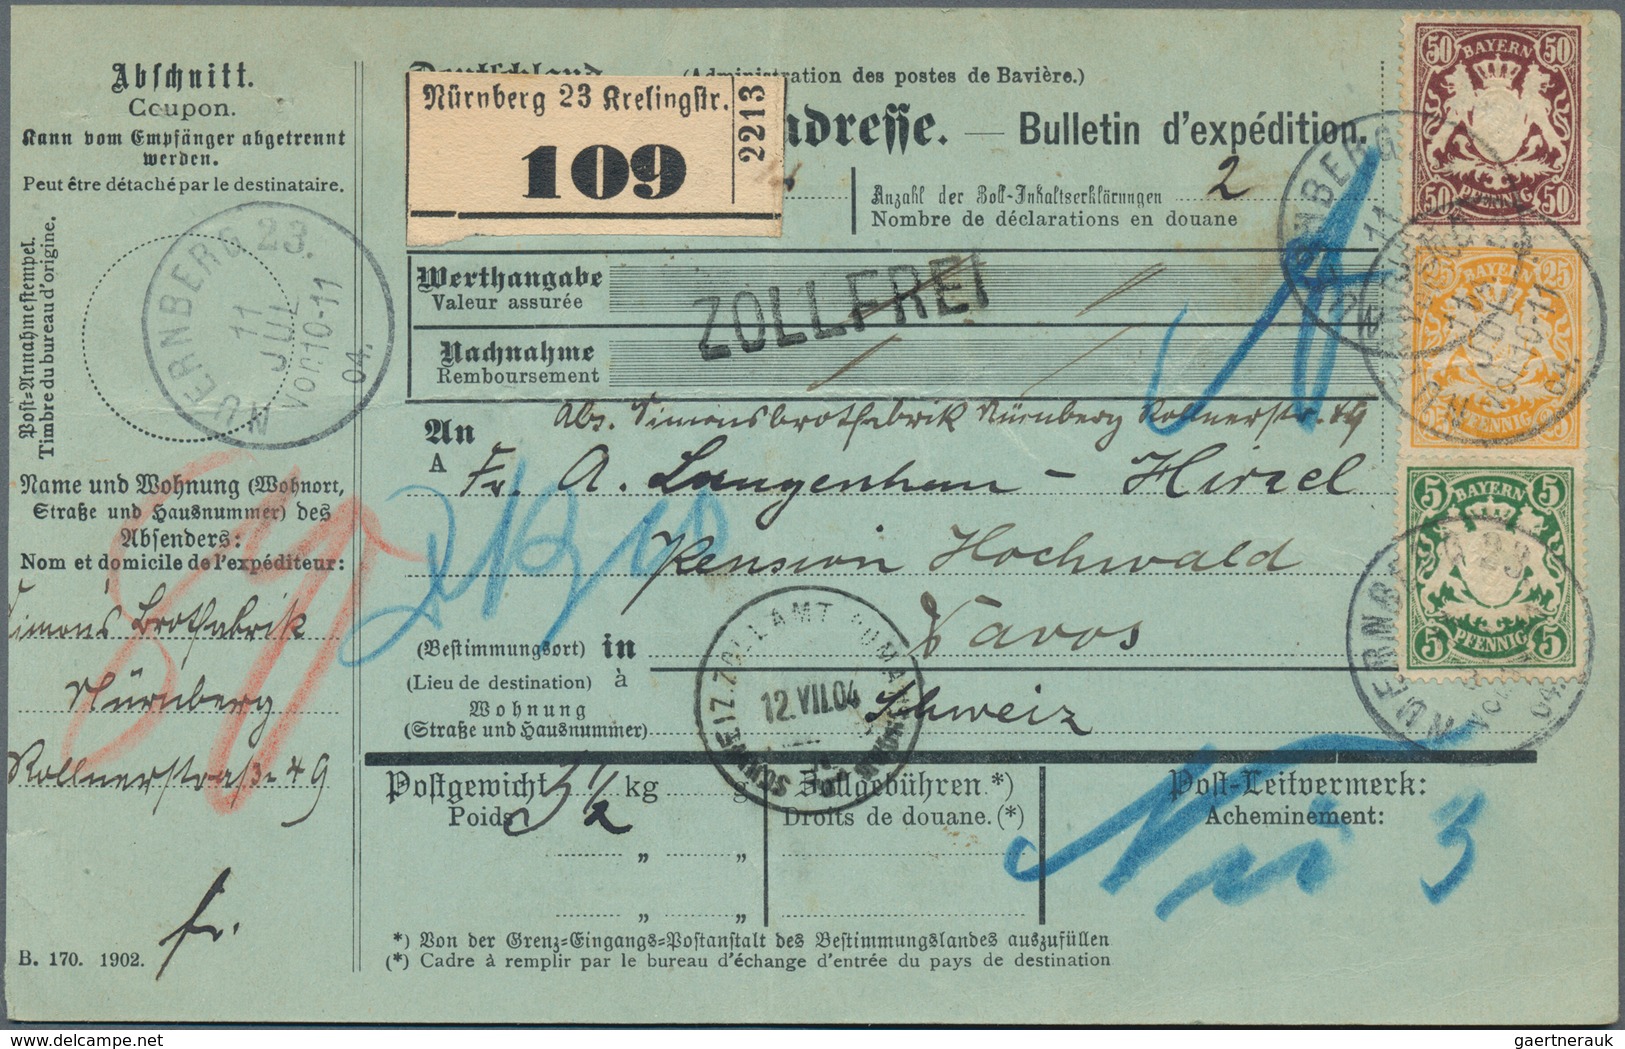 Bayern - Paketkarten: 1895/1918, Partie von acht Auslandspaketkarten (fünfmal Schweiz, zweimal Türke